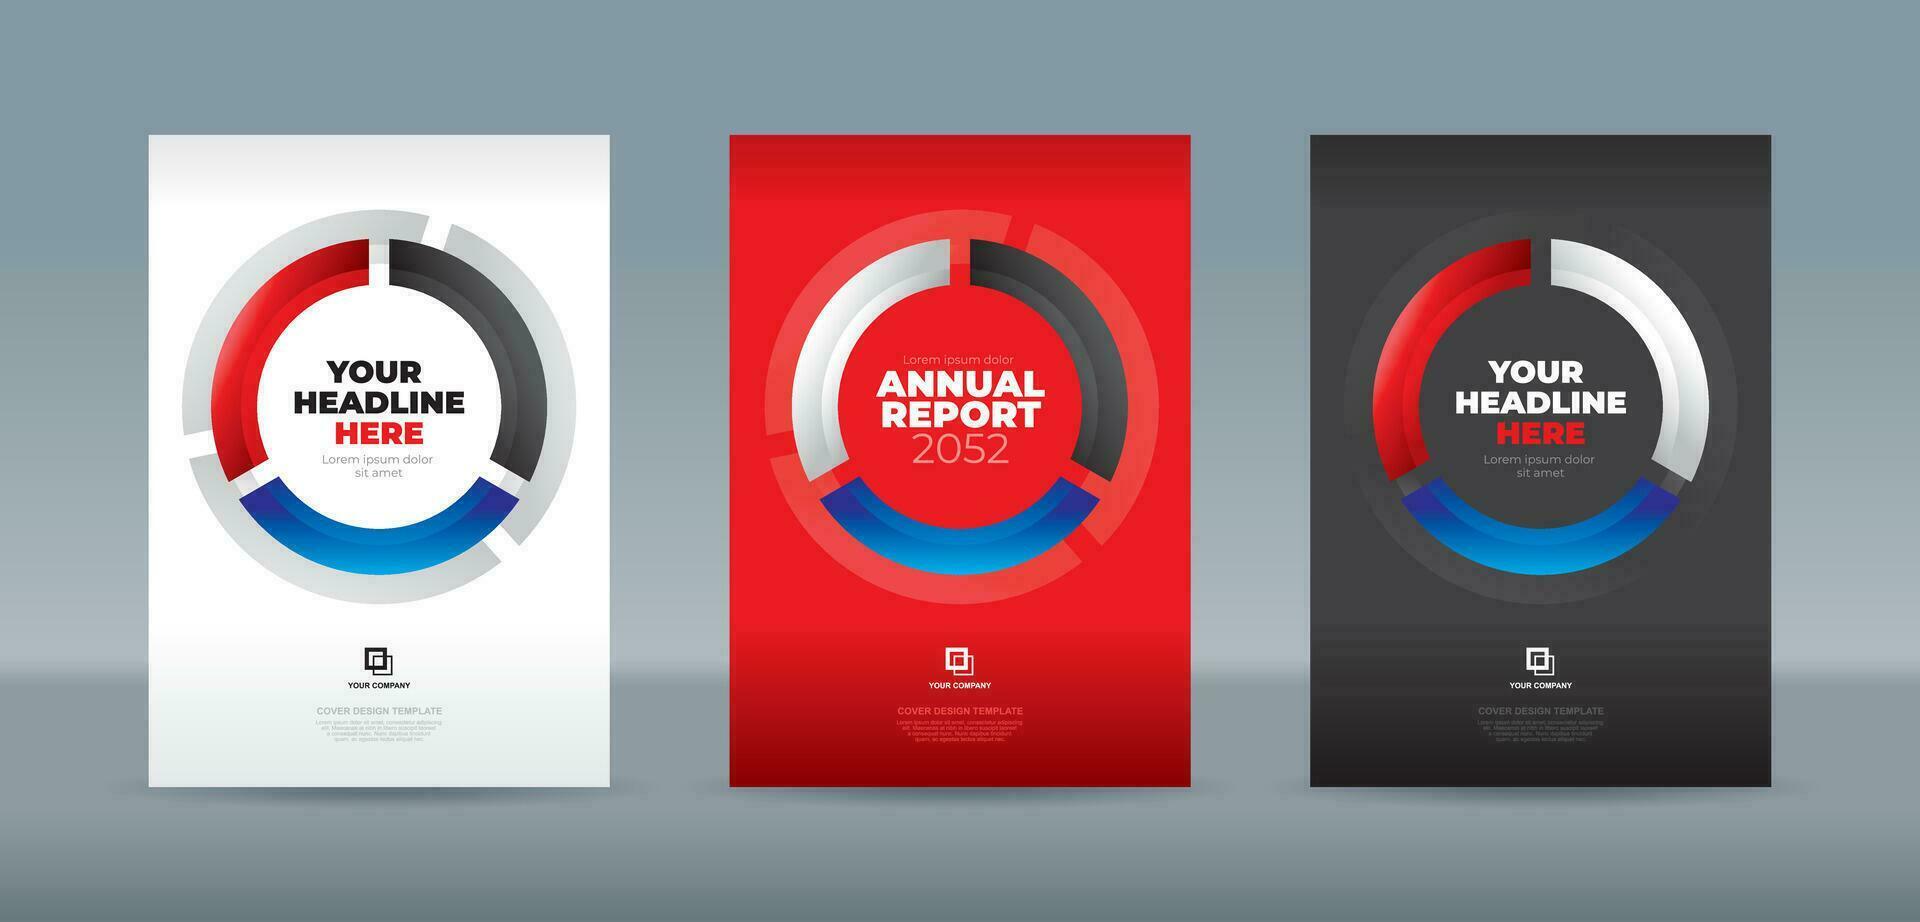 glas kurvor i svart, blå och röd färger form en cirkel på en vit bakgrund. a4 storlek bok omslag mall för årlig Rapportera, tidskrift, häfte, förslag, portfölj, broschyr, affisch vektor